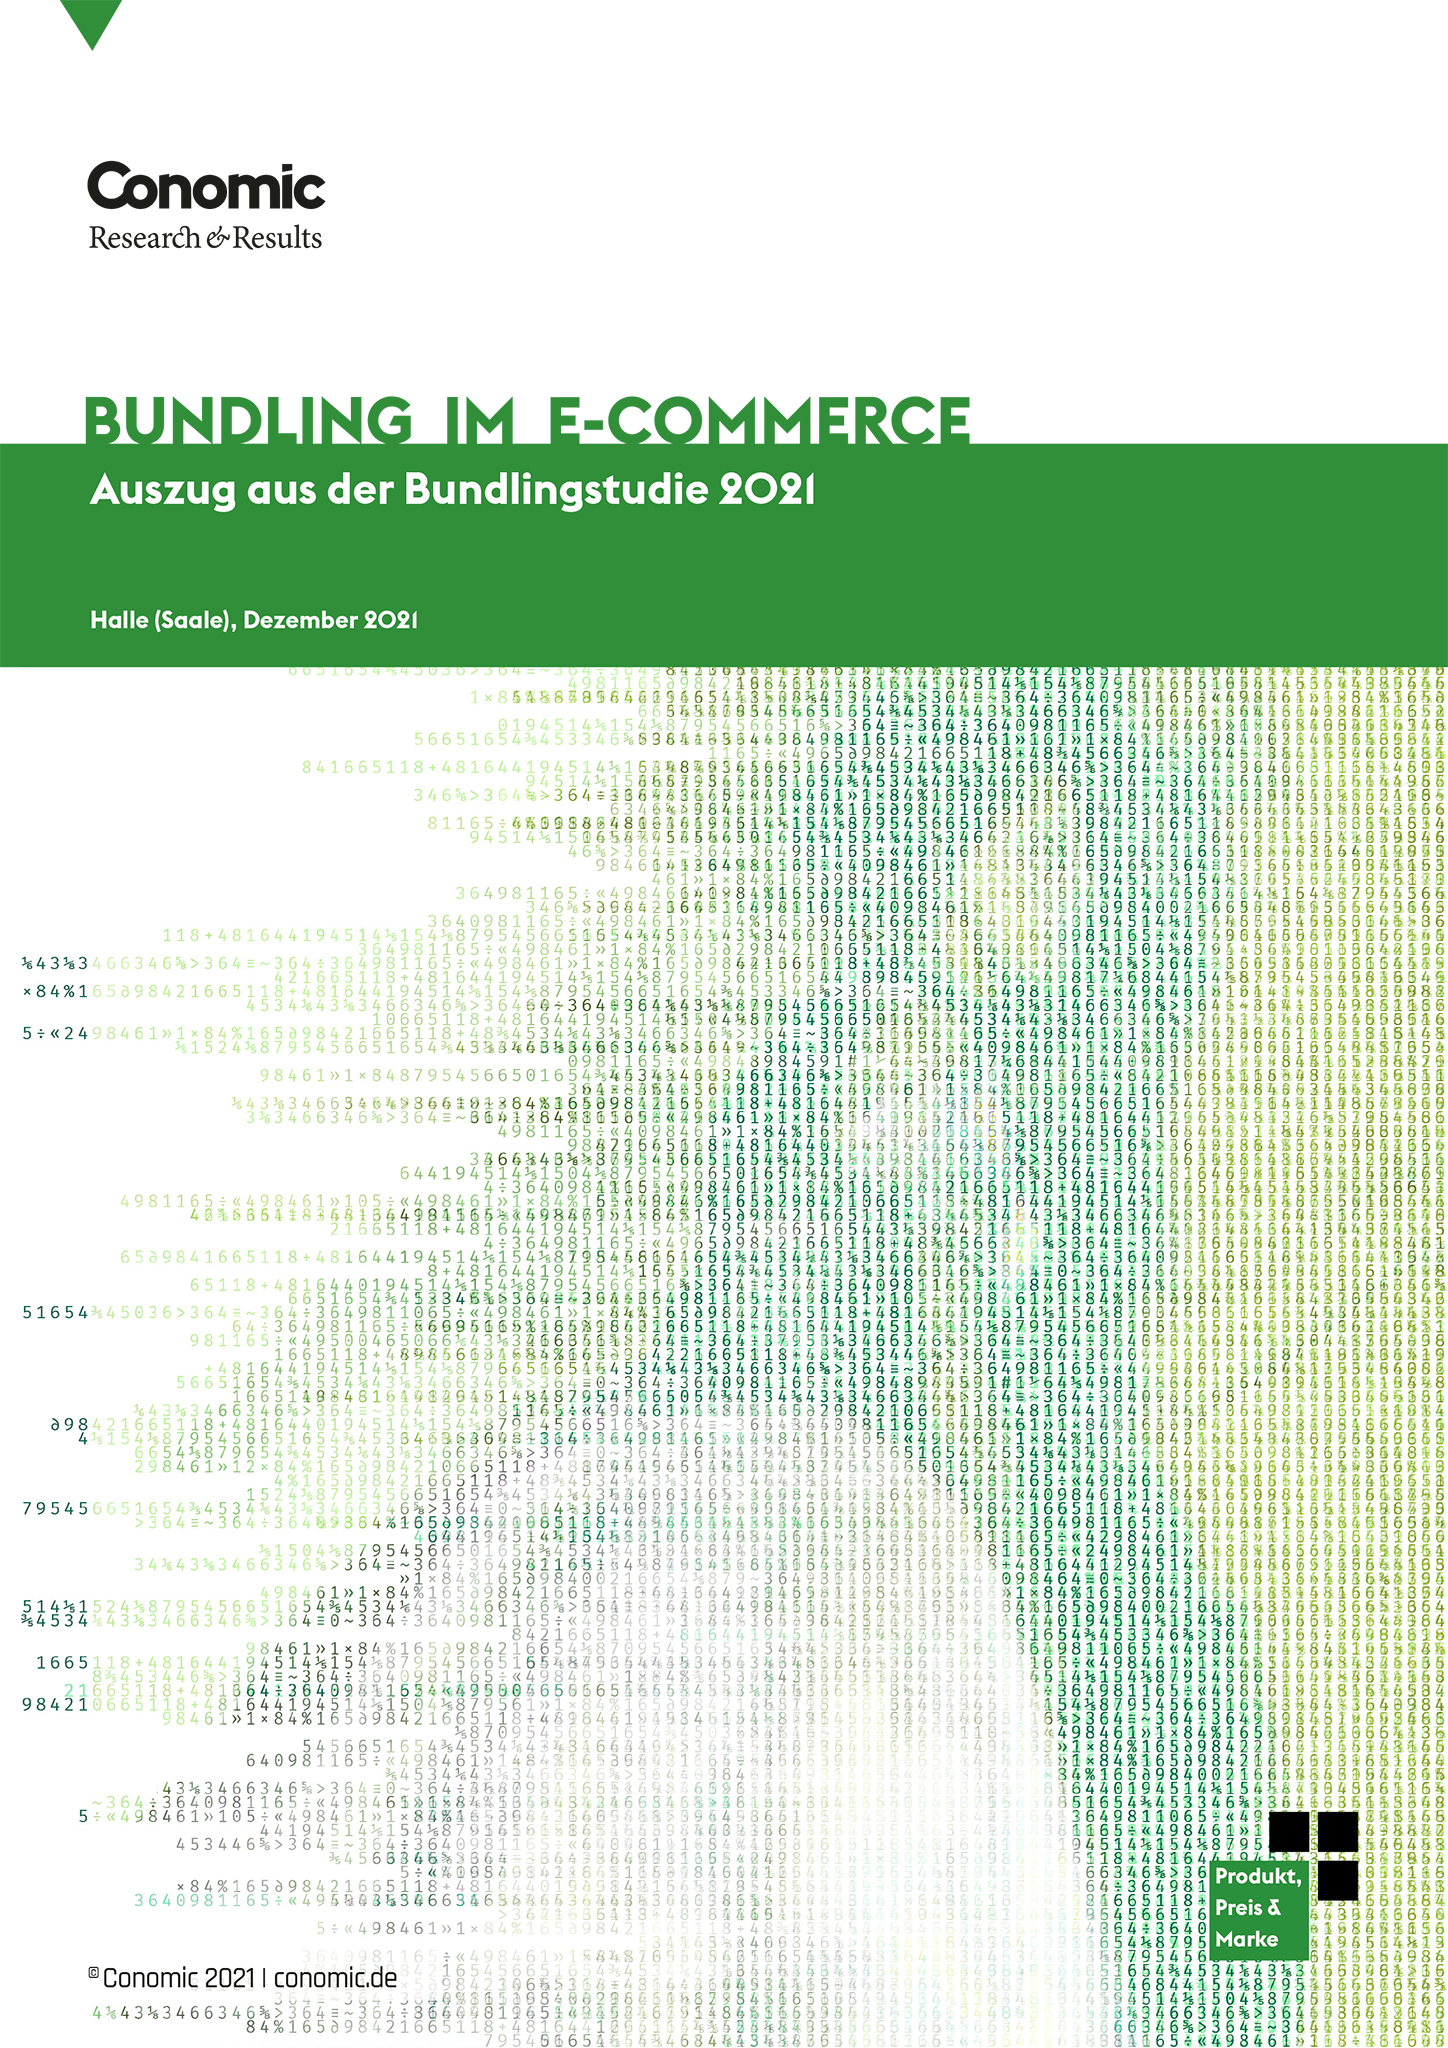 Deckblatt Studie Bundling im E-Commerce; Bild: Conomic